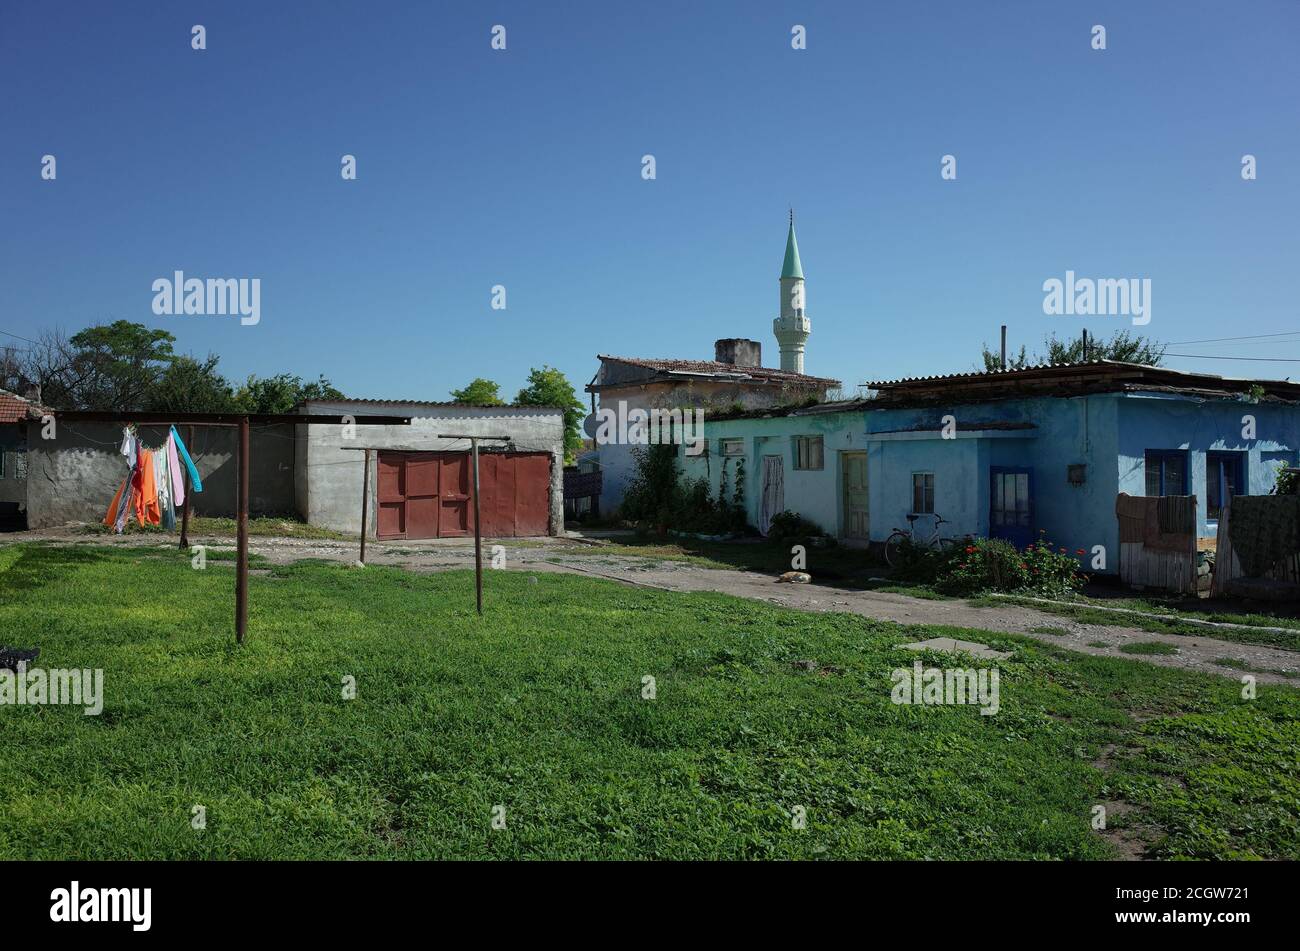 Kleine Stadt Gemeinschaft zeigt Multikulturalismus der Dobrogea Region, mit Minarett von einer Moschee sichtbar unter den bescheidenen Häusern Stockfoto